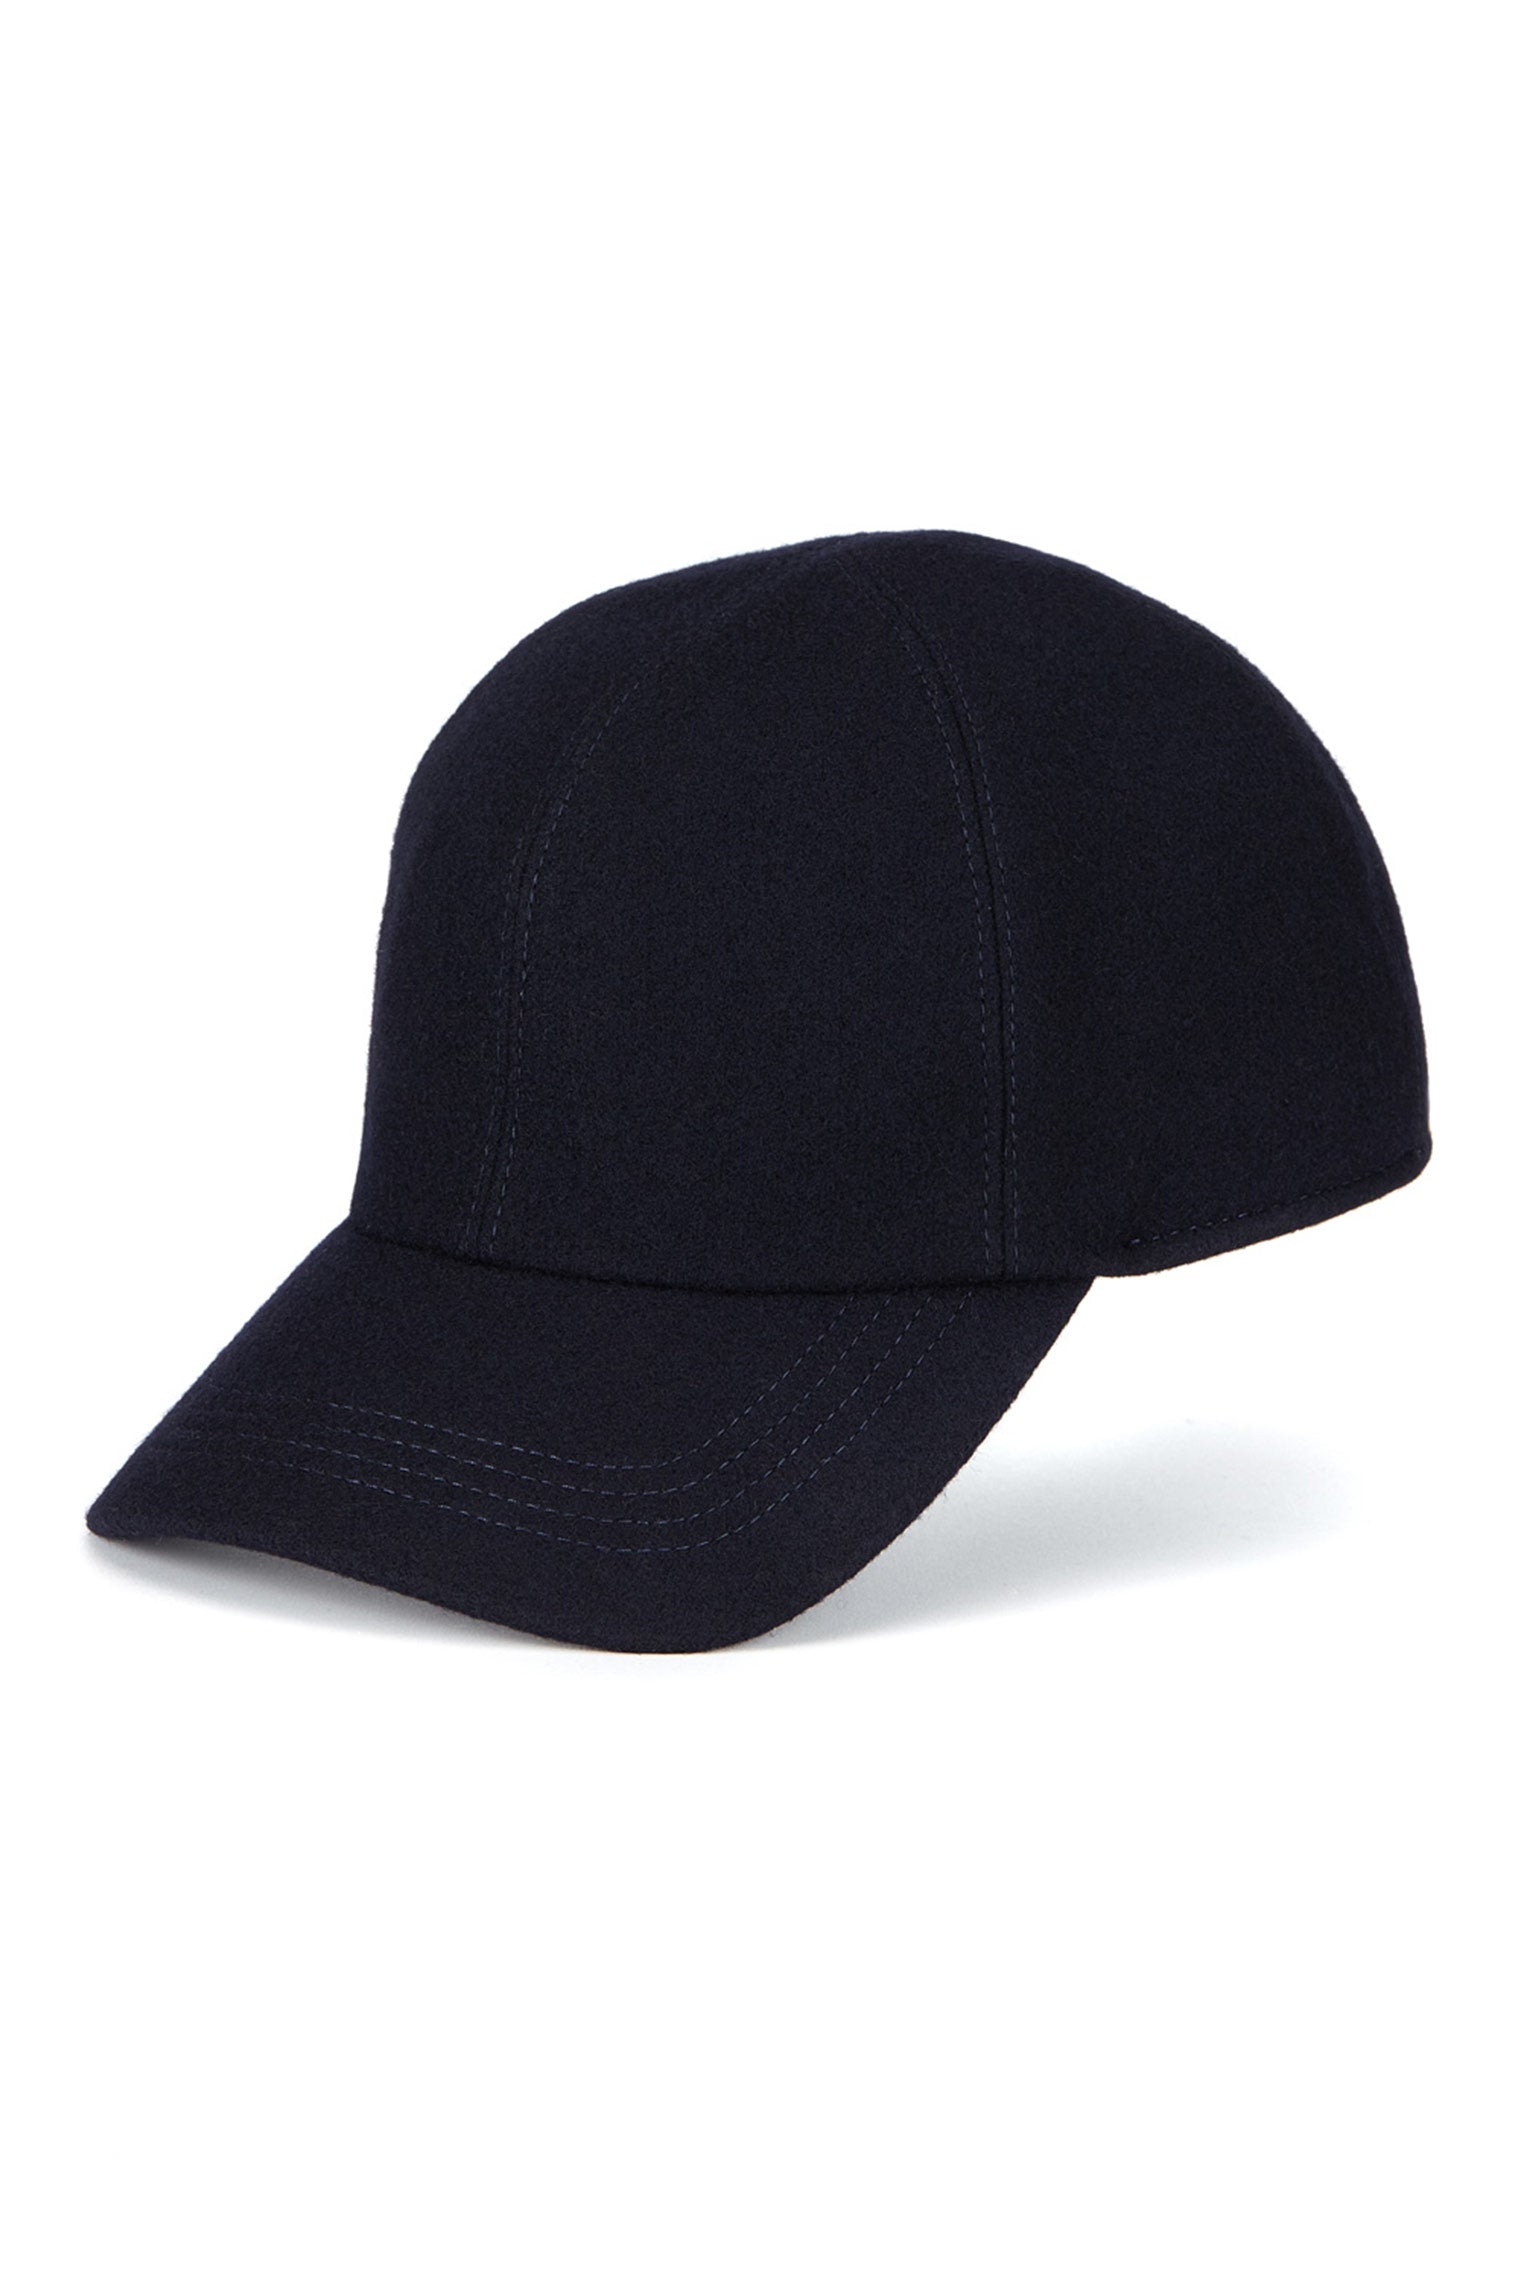 Zermatt Baseball Cap - Hats with Ear Flaps - Lock & Co. Hatters London UK